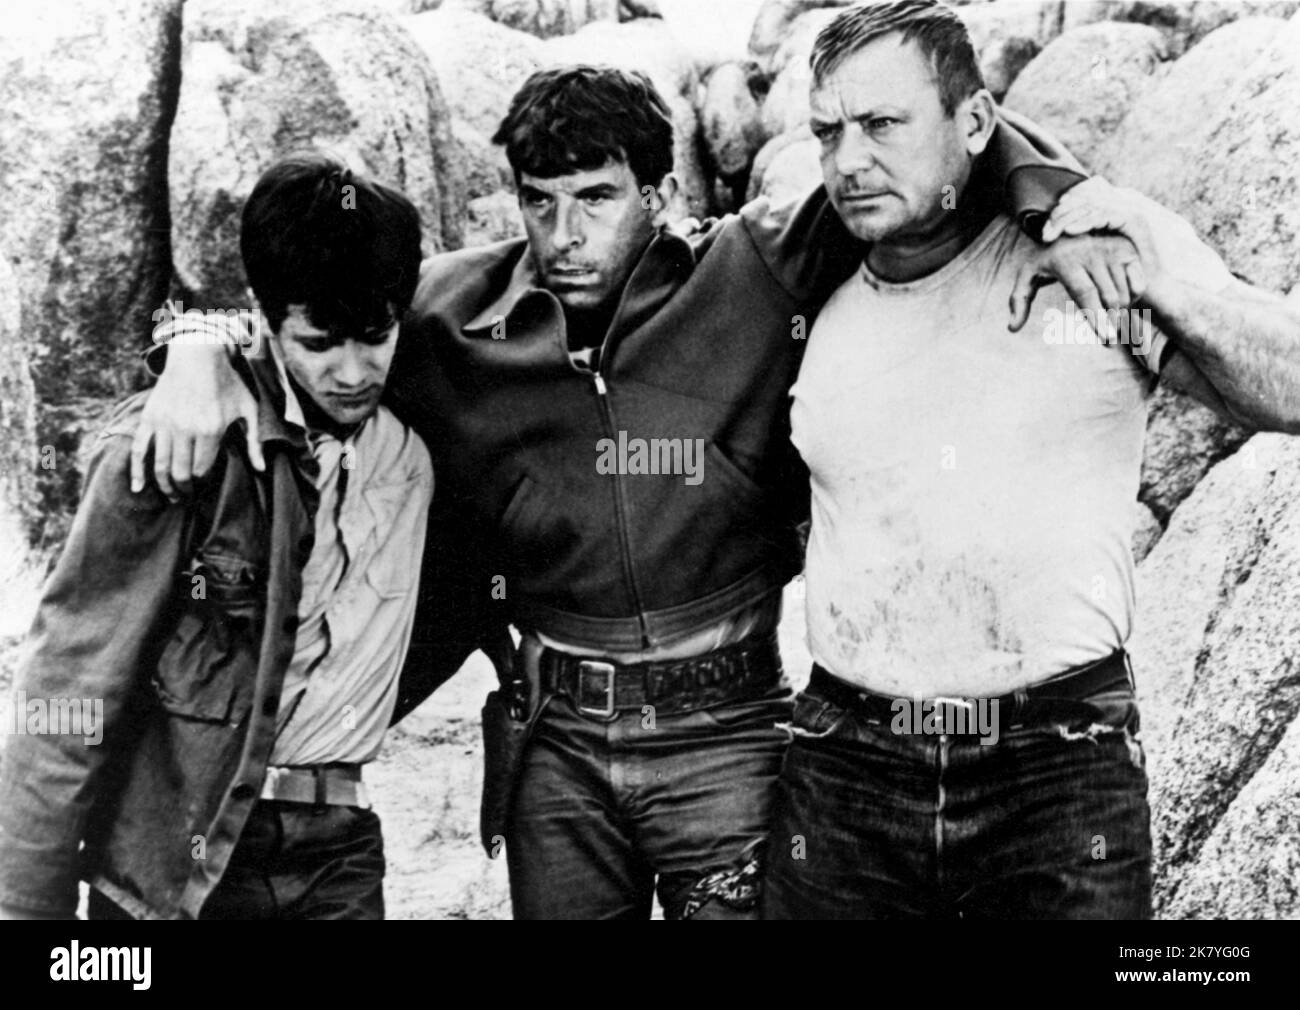 Tommy Sands, Fernando Lamas & Aldo Ray film: The violent One (1964)  personnages: Mike Marain, Manuel Vega et Joe Vorzyck Directeur: Fernando  Lamas 01 octobre 1967 **AVERTISSEMENT** cette photographie est destinée à